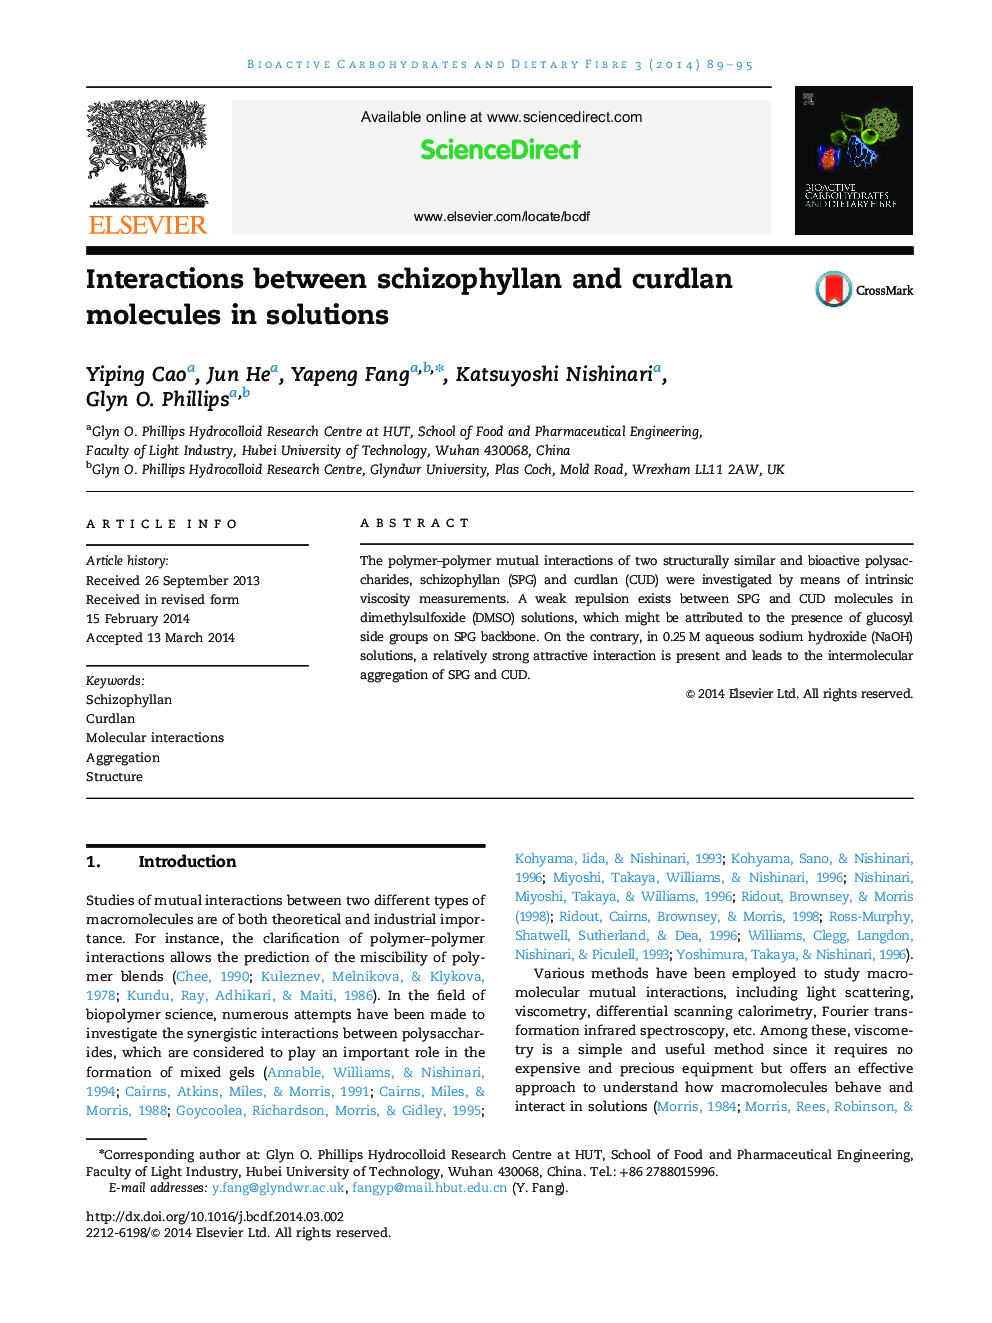 تعاملات بین مولکول های اسکیزوفیلان و کوردلان در محلول 